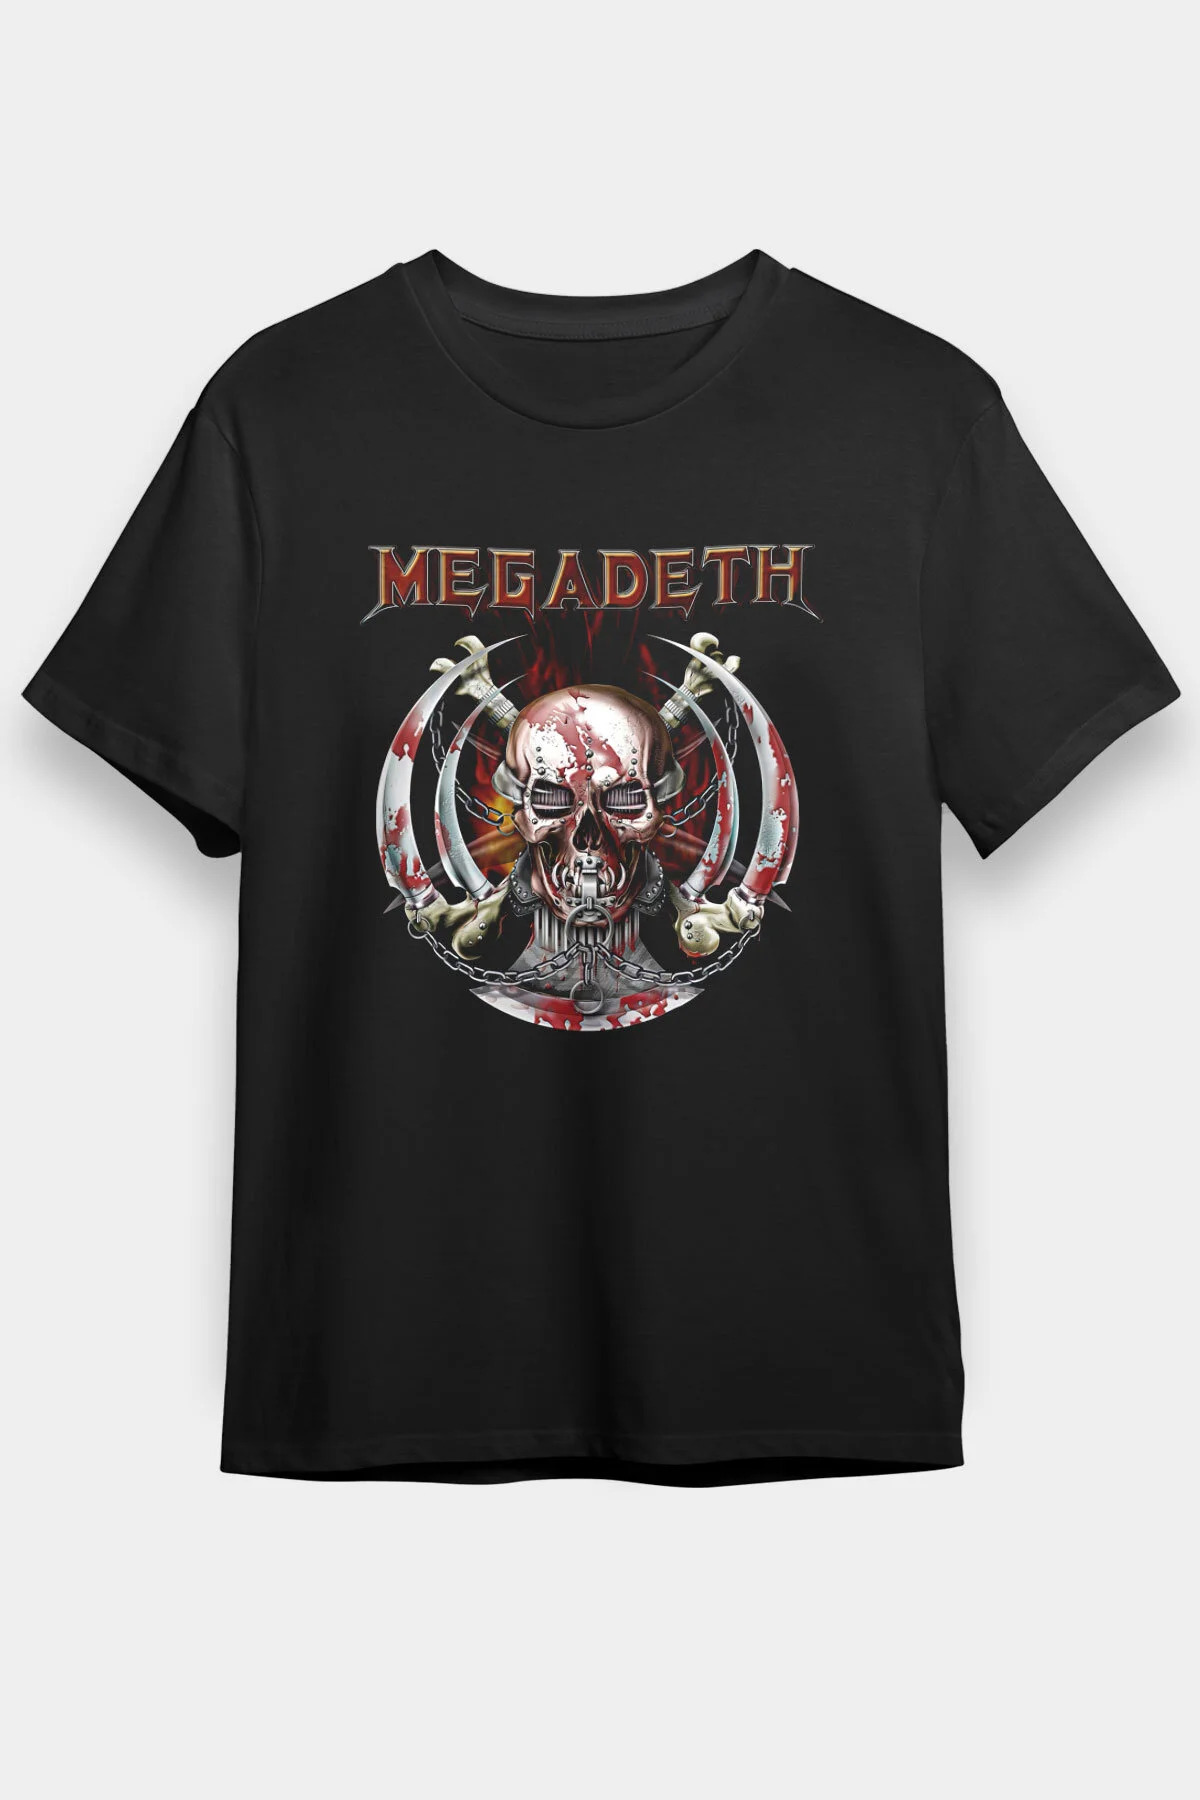 Megadeth T shirt, Music Band ,Unisex Tshirt  04/